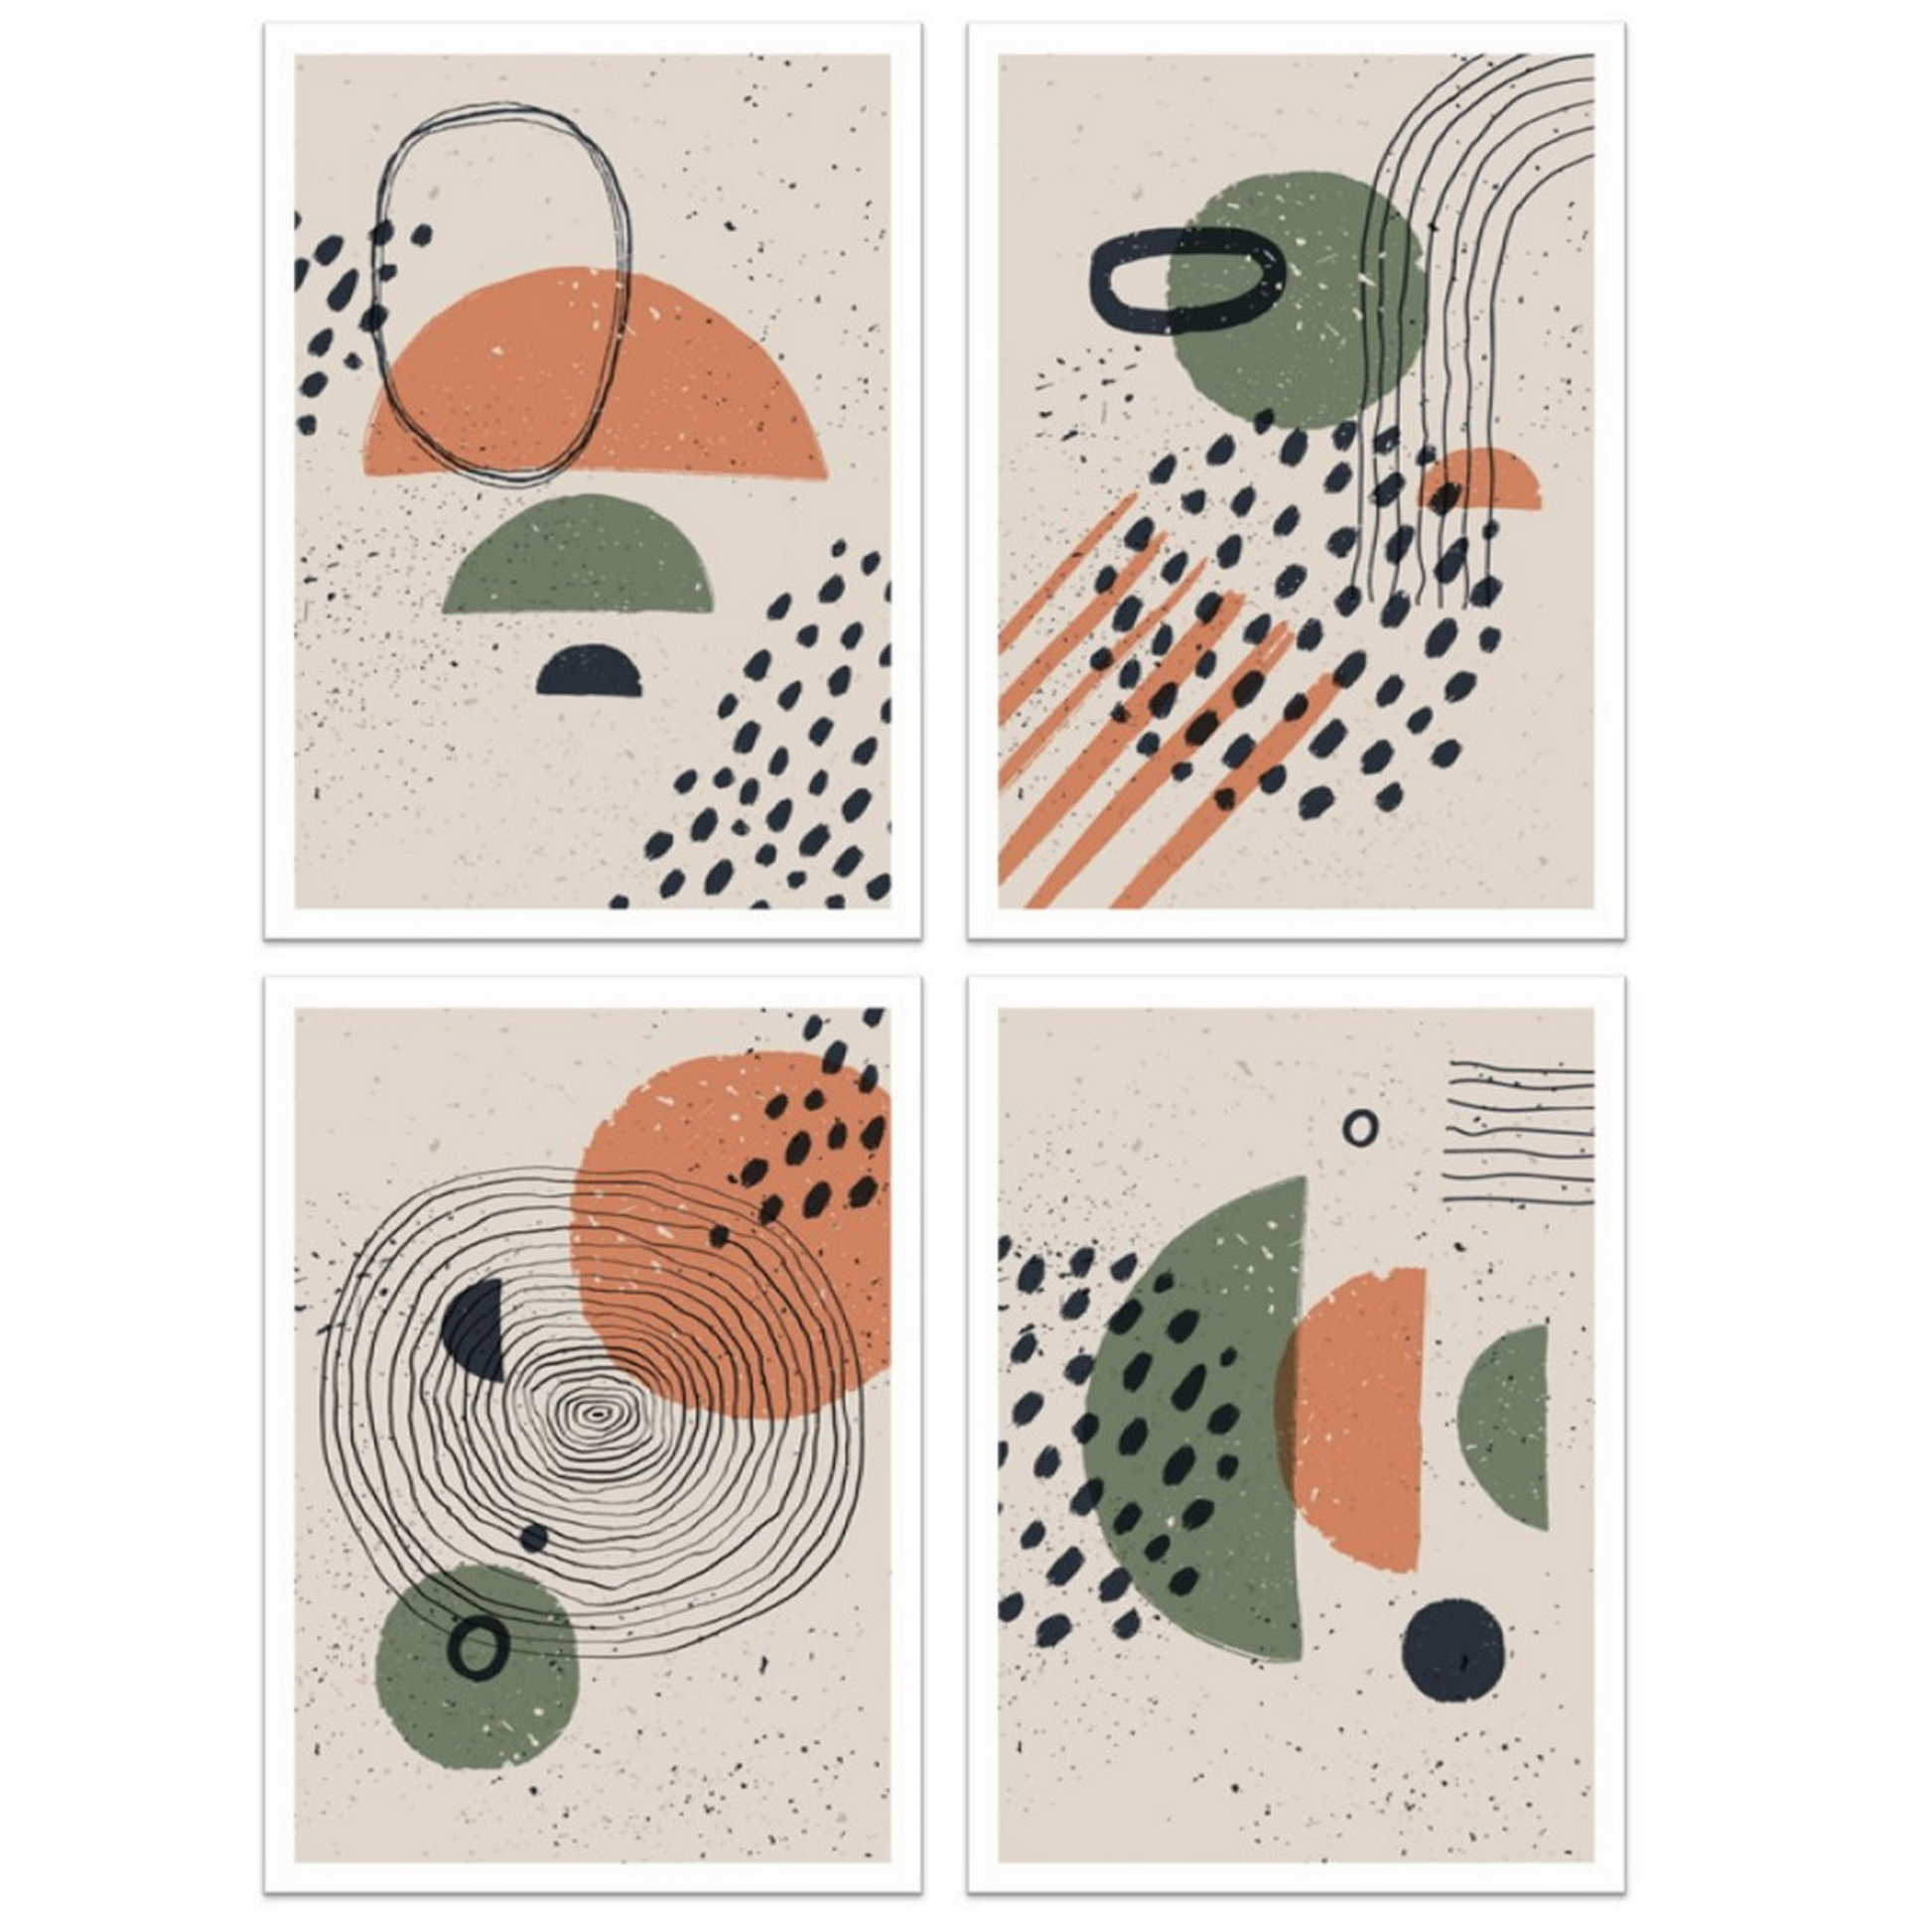 Serie med 4 motiver i abstrakt mønster. Fargenyanser i sort, rust, grønn og beige.